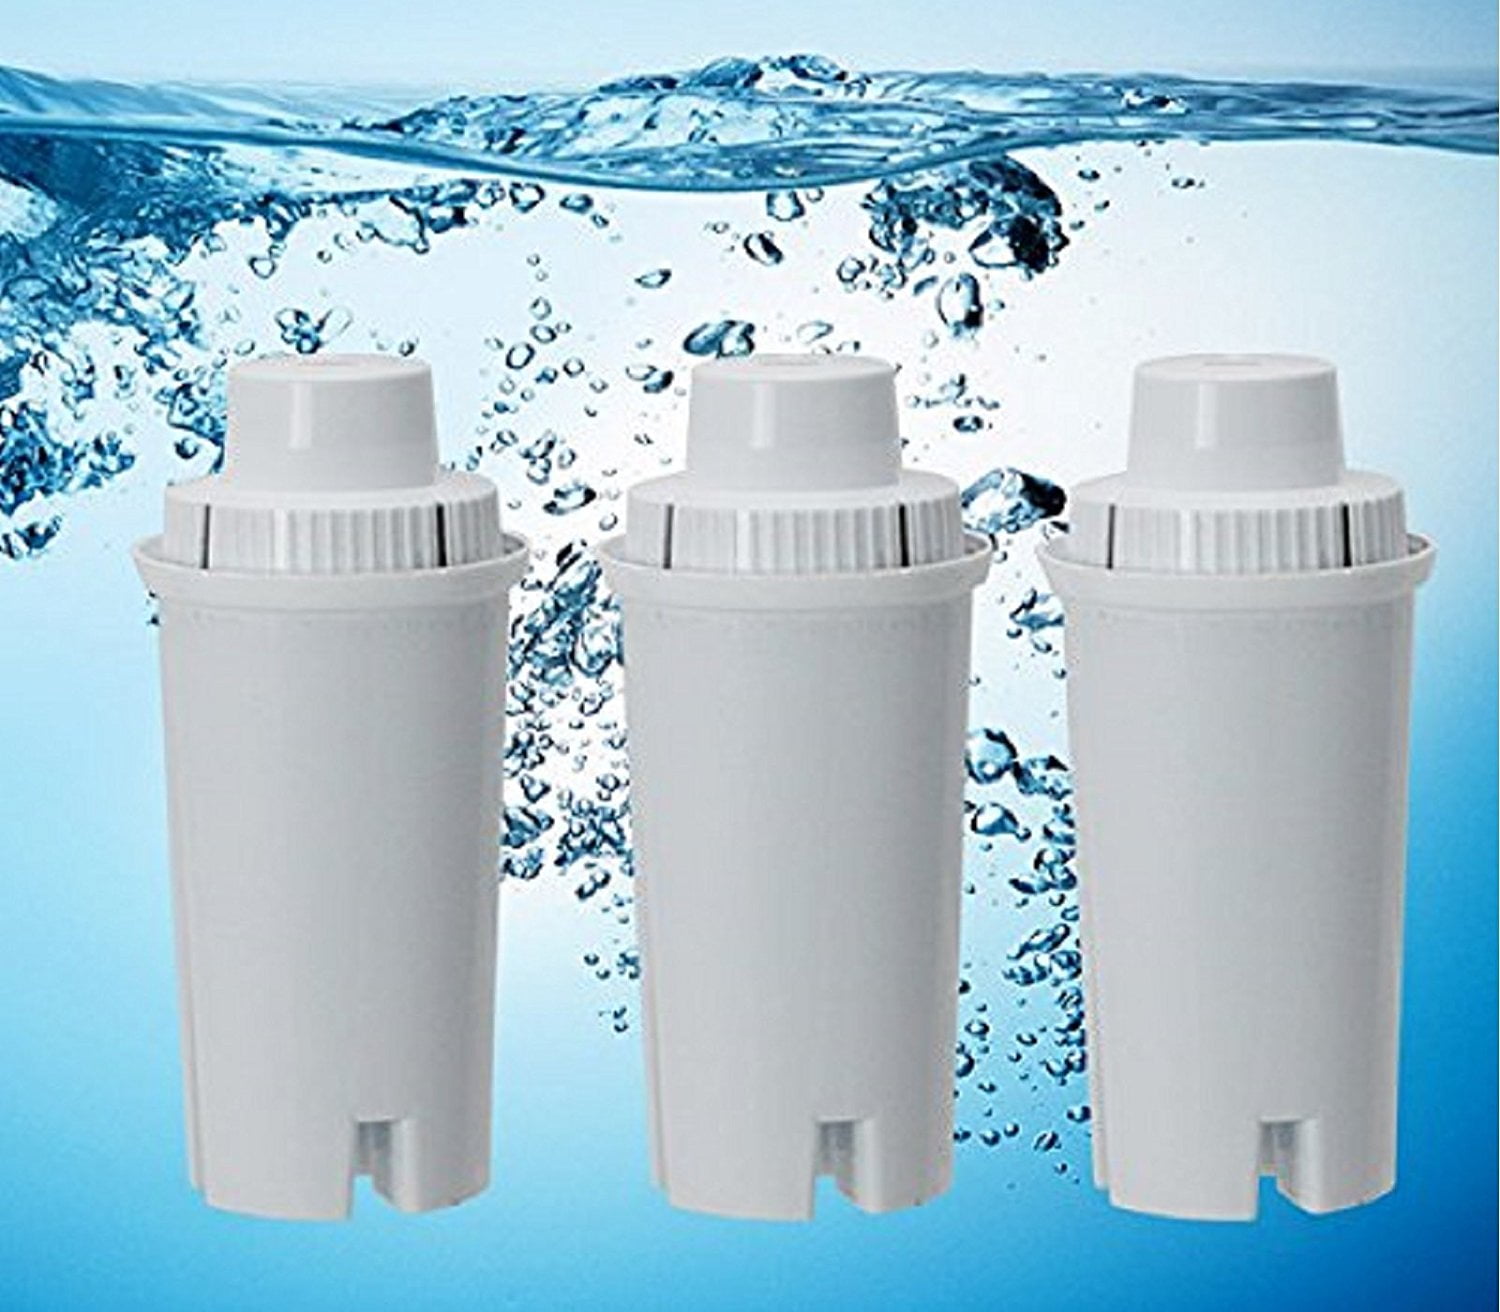 Фильтр. Water Filter фильтр. Фильтр Water Filter нв. Фильтры для очистки воды реклама. Разные типы фильтров для воды.